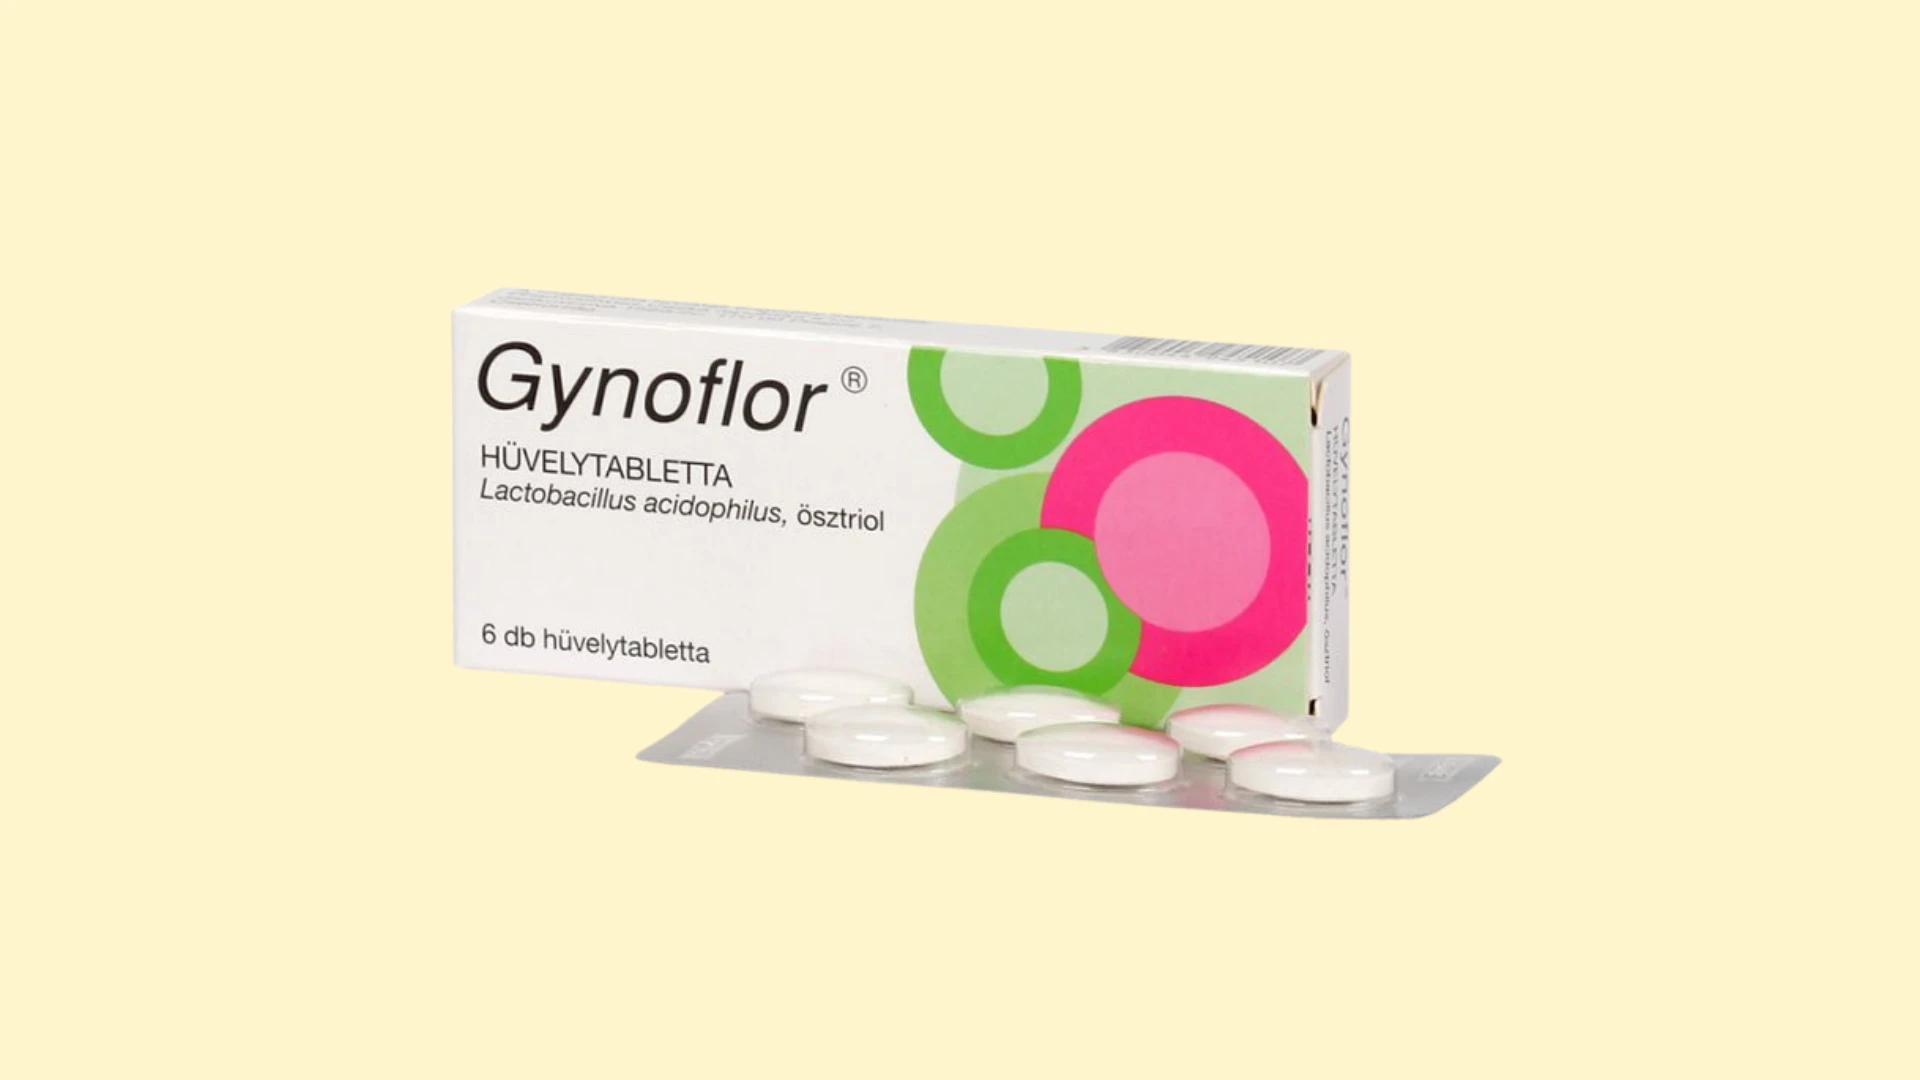 Gynoflor - Recepta online - e-Recepta z konsultacją | cena, dawkowanie, przeciwwskazania